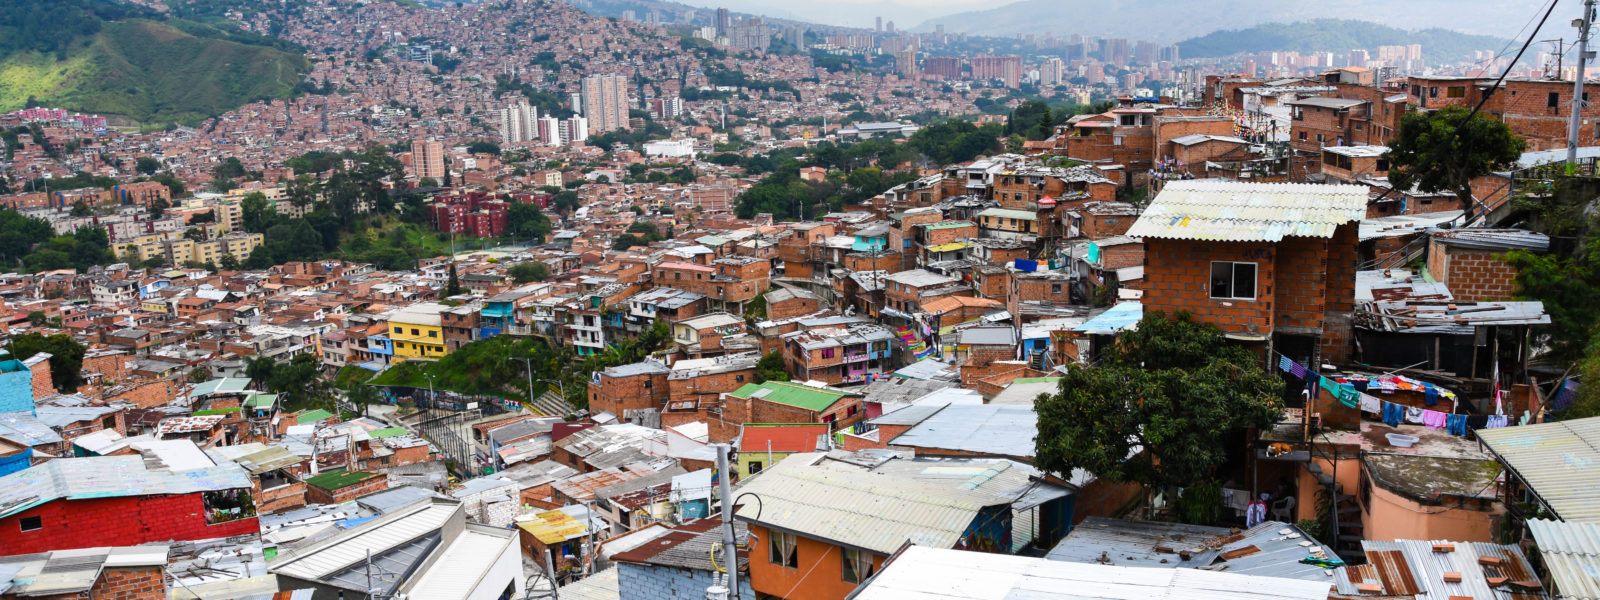 Medellín – a City of Transformation